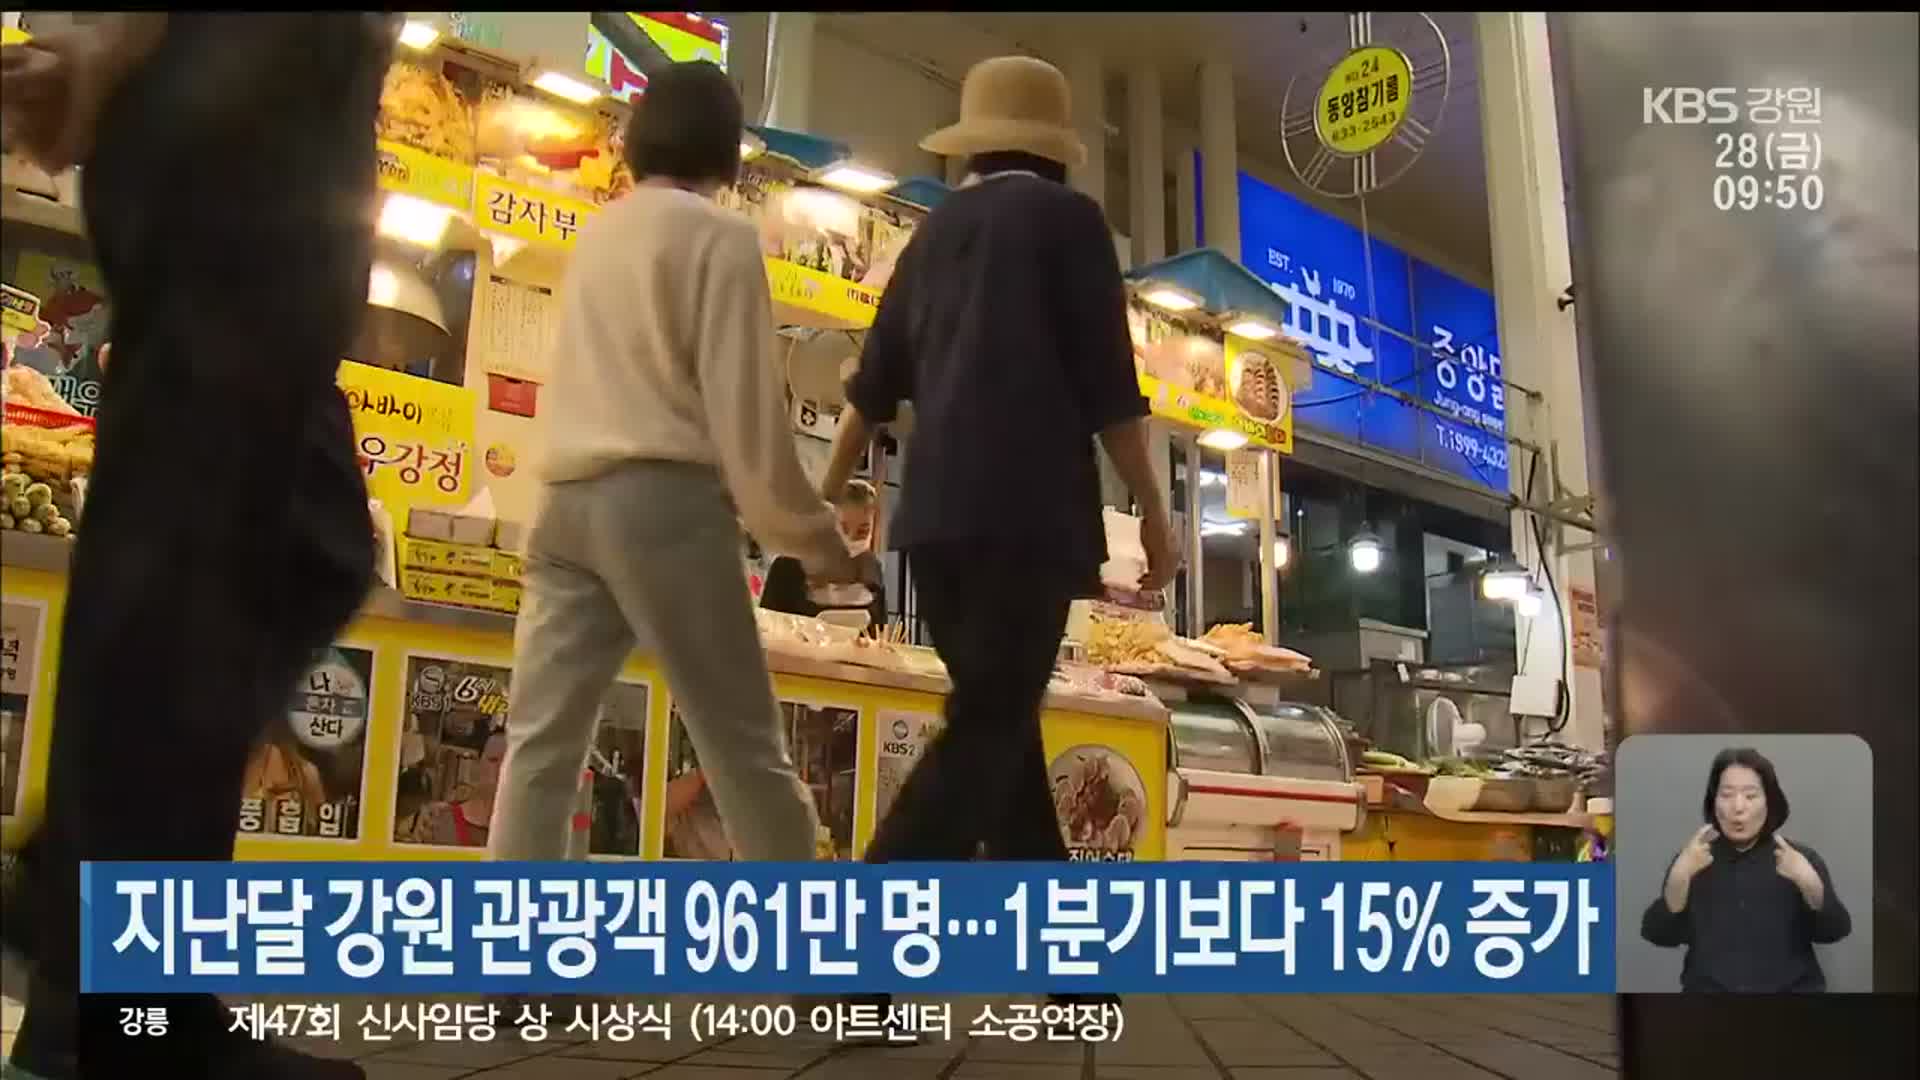 지난달 강원 관광객 961만 명…1분기보다 15% 증가